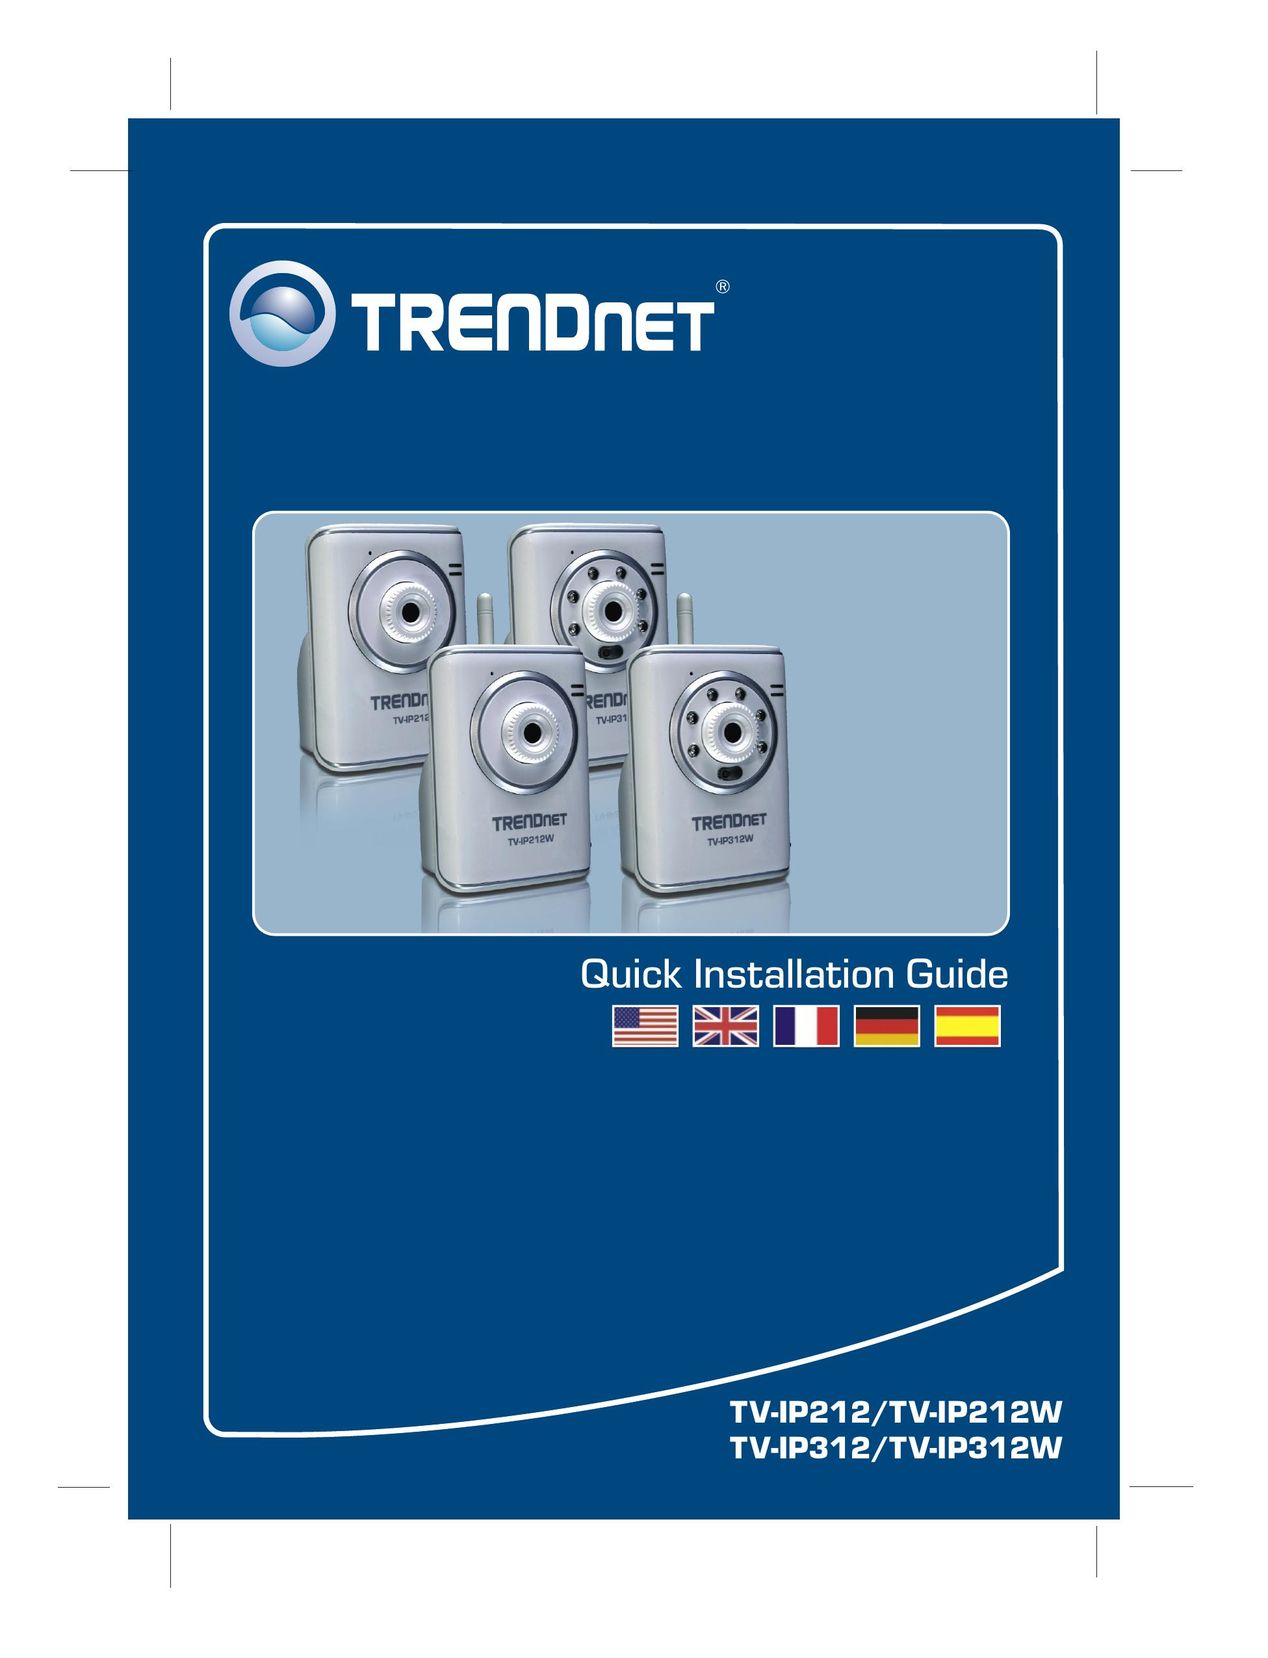 TRENDnet TV-IP312W Computer Accessories User Manual